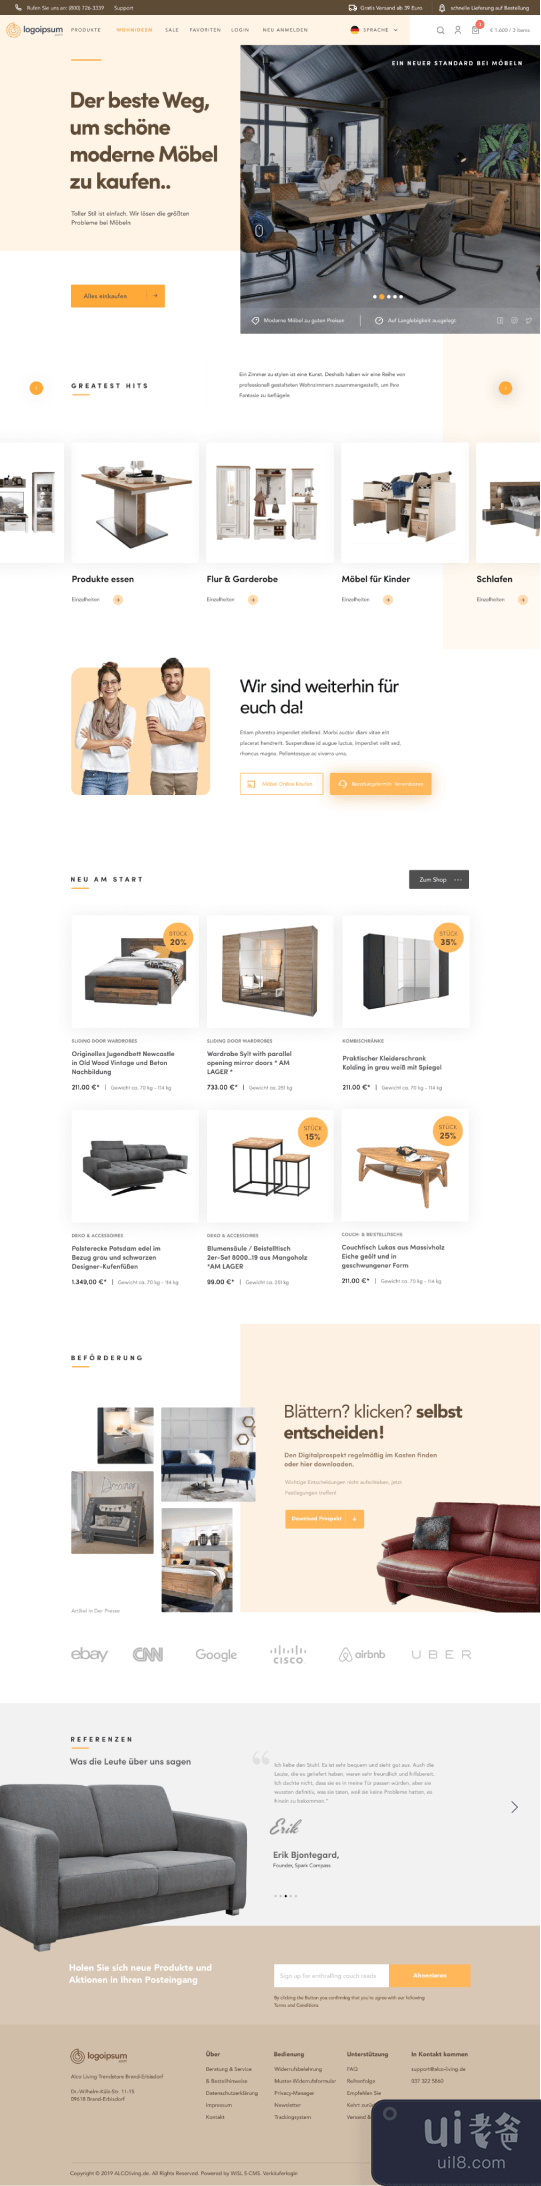 Futuretur 当代室内设计和家具店(Futuretur A Contemporary Interior Design & Furniture Store)插图